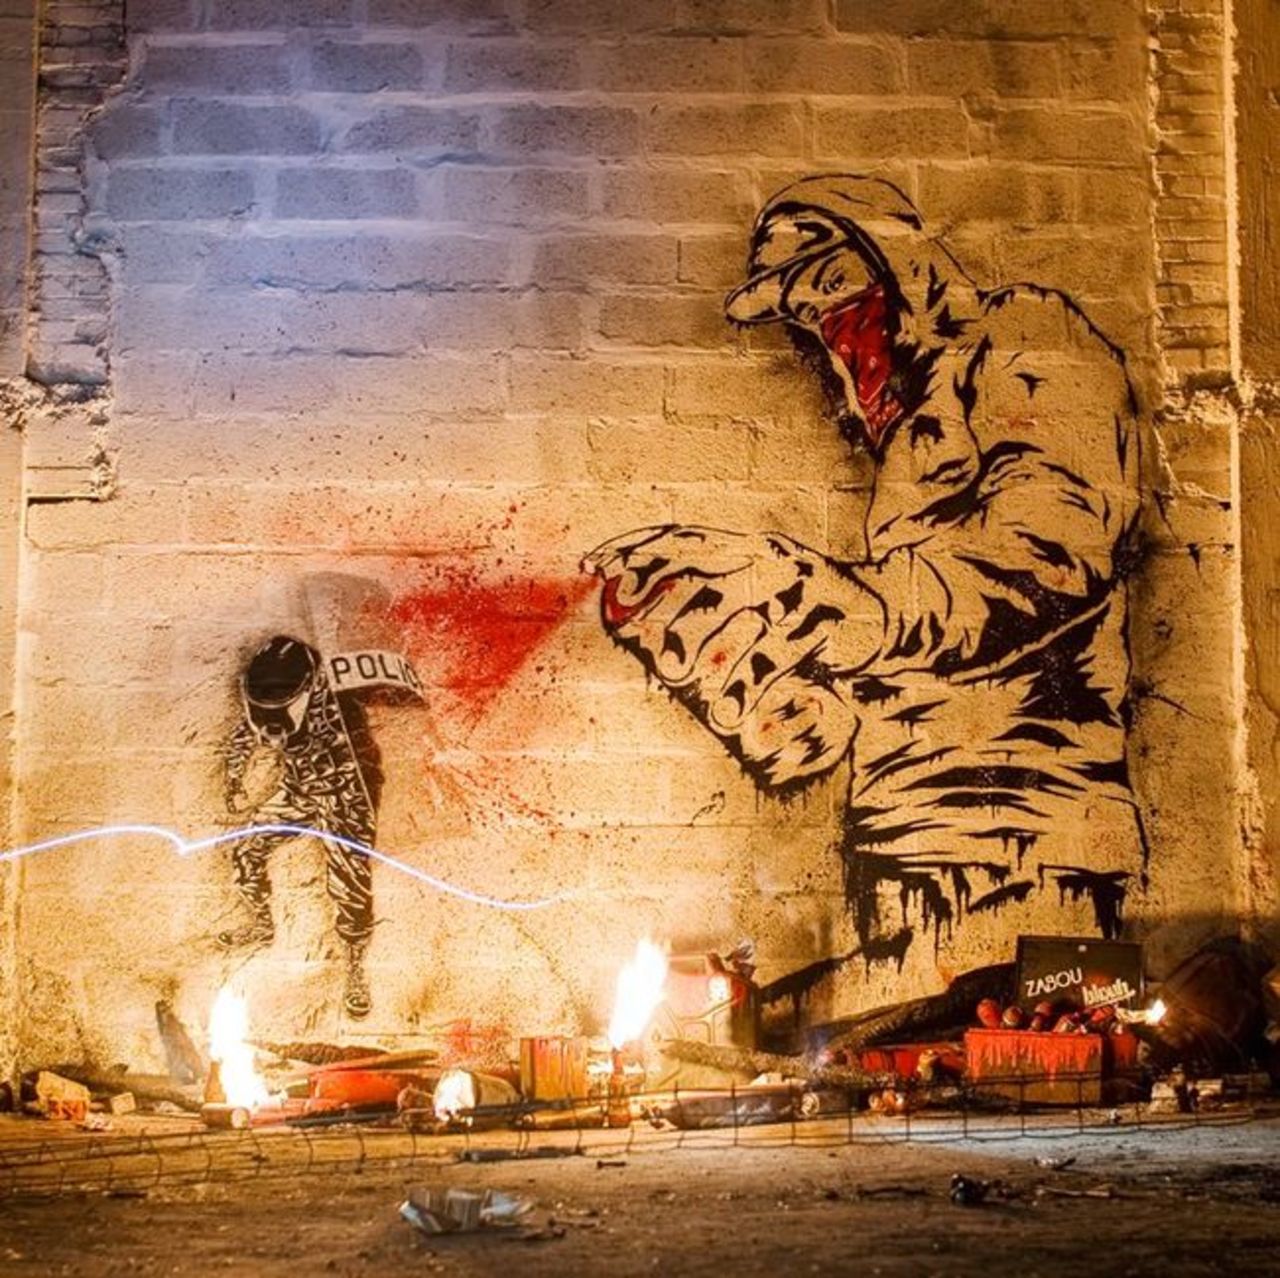 "@hypatia373: #art #streetart #graffiti http://t.co/m6T03O7Kyp" A.C.A.B